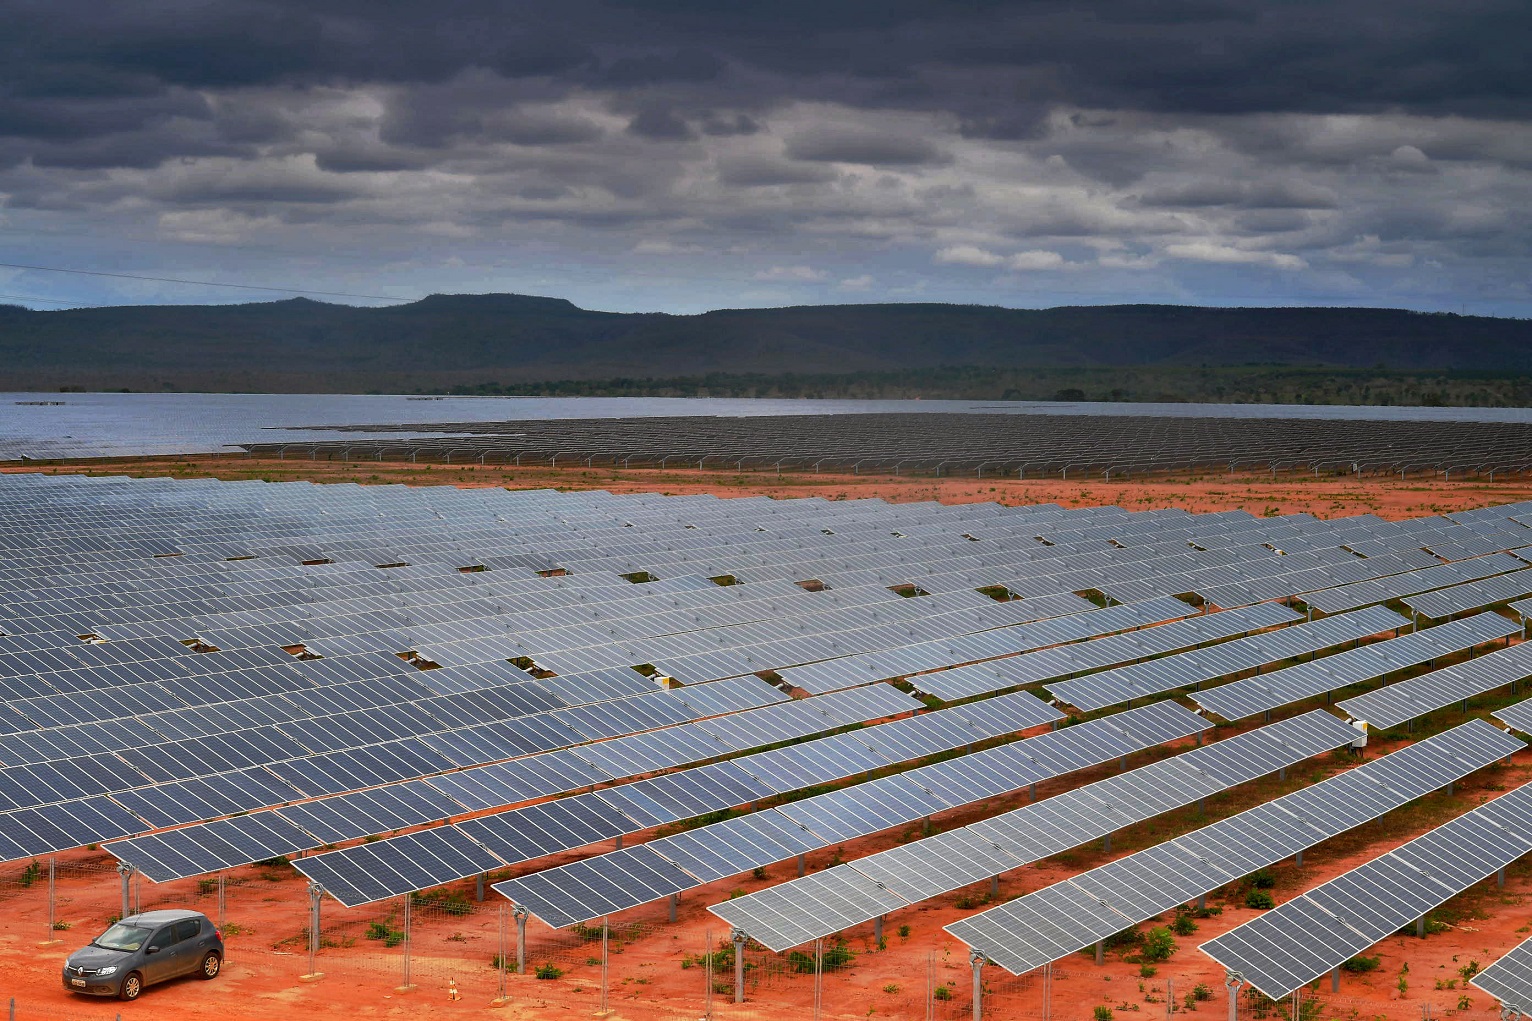 Vista aérea de uma fazenda de energia solar em Pirapora, Minas Gerais. Especialistas defendem o investimento em energia limpa para reduzir as chances de uma crise energética. Foto Carl de Souza/AFP